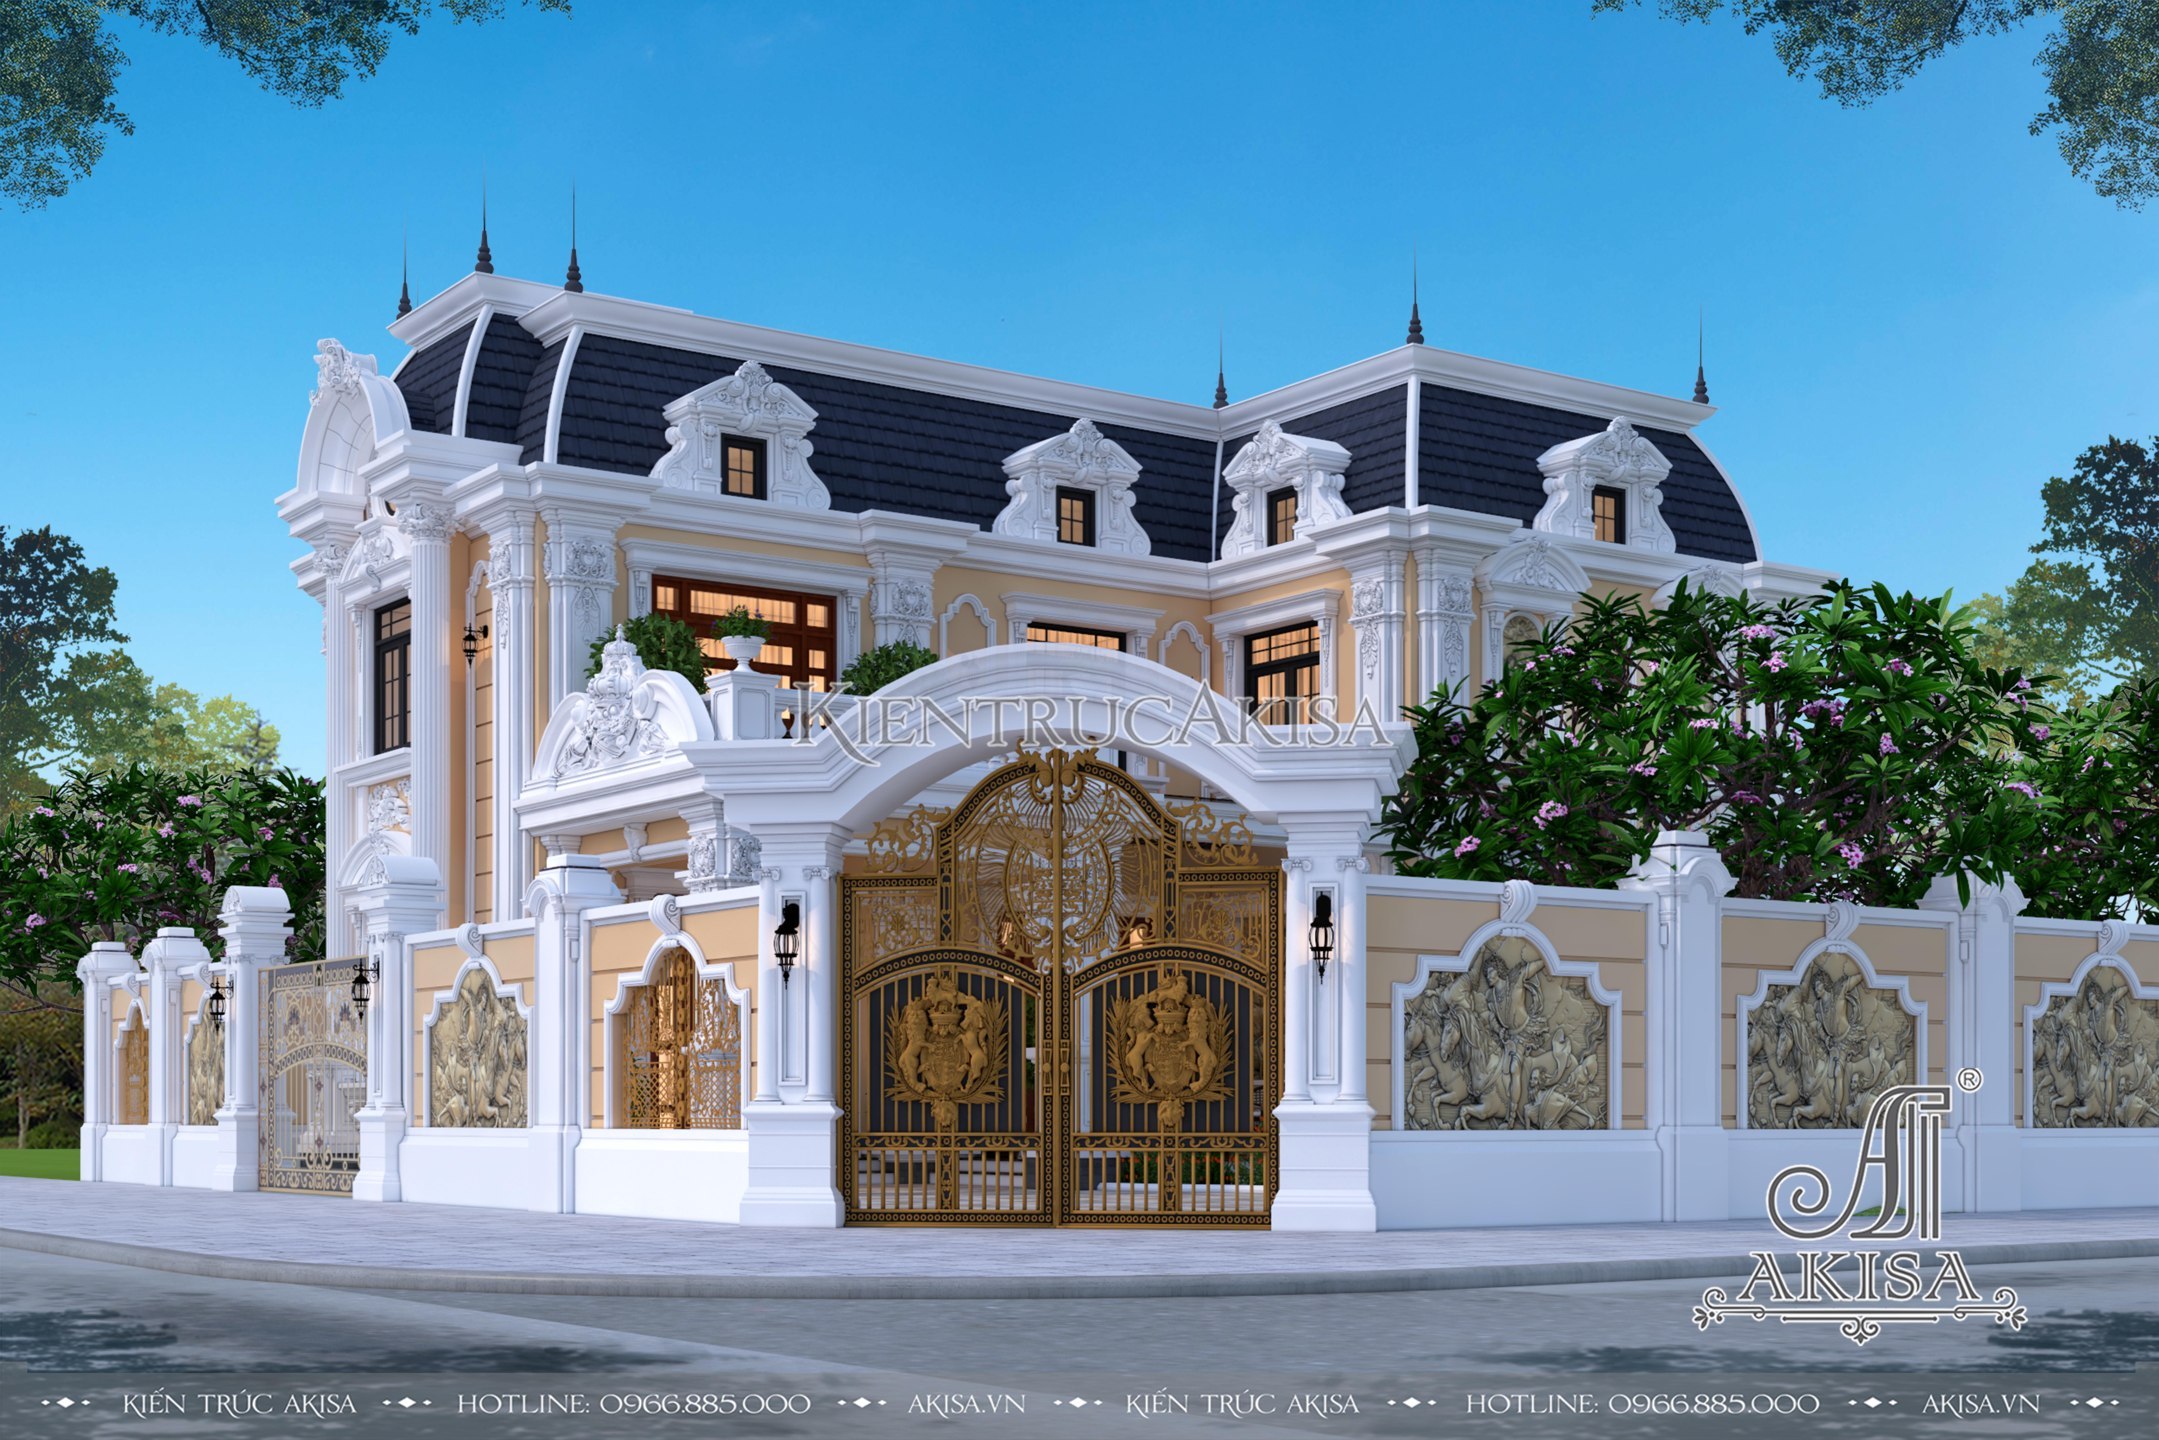 Nhà biệt thự kiểu Pháp mái mansard là điểm nhấn khác biệt cho ngôi nhà của bạn, mang lại cảm giác sang trọng và độc đáo. Kiểu mái này tạo nên một không gian thoáng đãng, ẩn chứa sự lãng mạn của kiến trúc Pháp. Tham khảo hình ảnh để thấy sự tinh tế trong những thiết kế này.